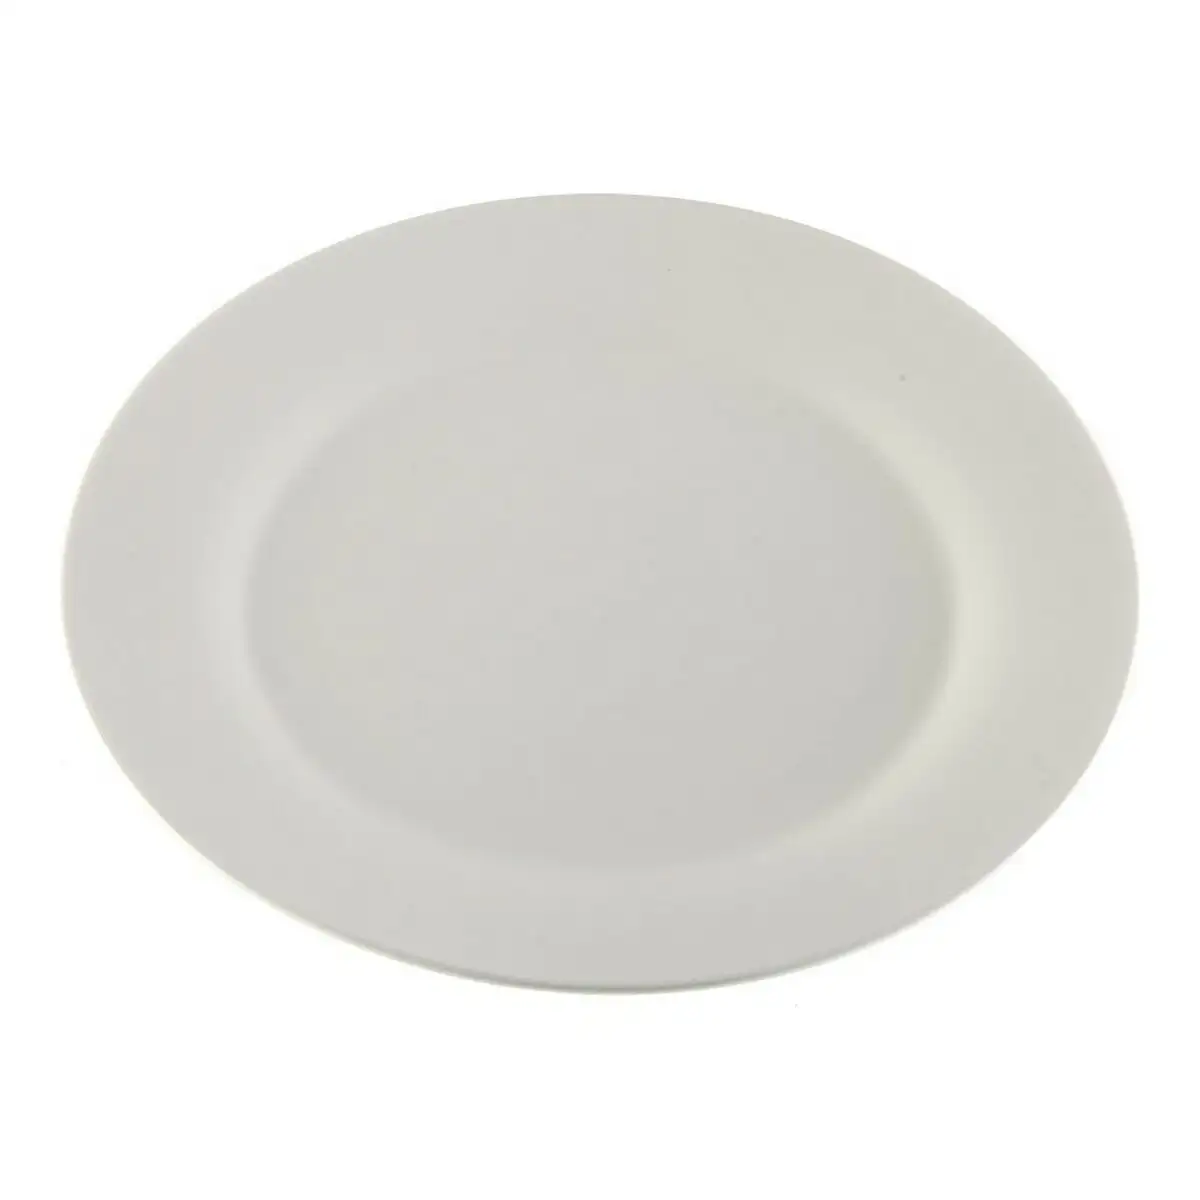 Assiette plate versa circulaire porcelaine blanche 27 x 27 cm_6199. DIAYTAR SENEGAL - Là où la Diversité Rencontre la Qualité. Parcourez notre gamme complète et trouvez des produits qui incarnent la richesse et l'unicité du Sénégal.